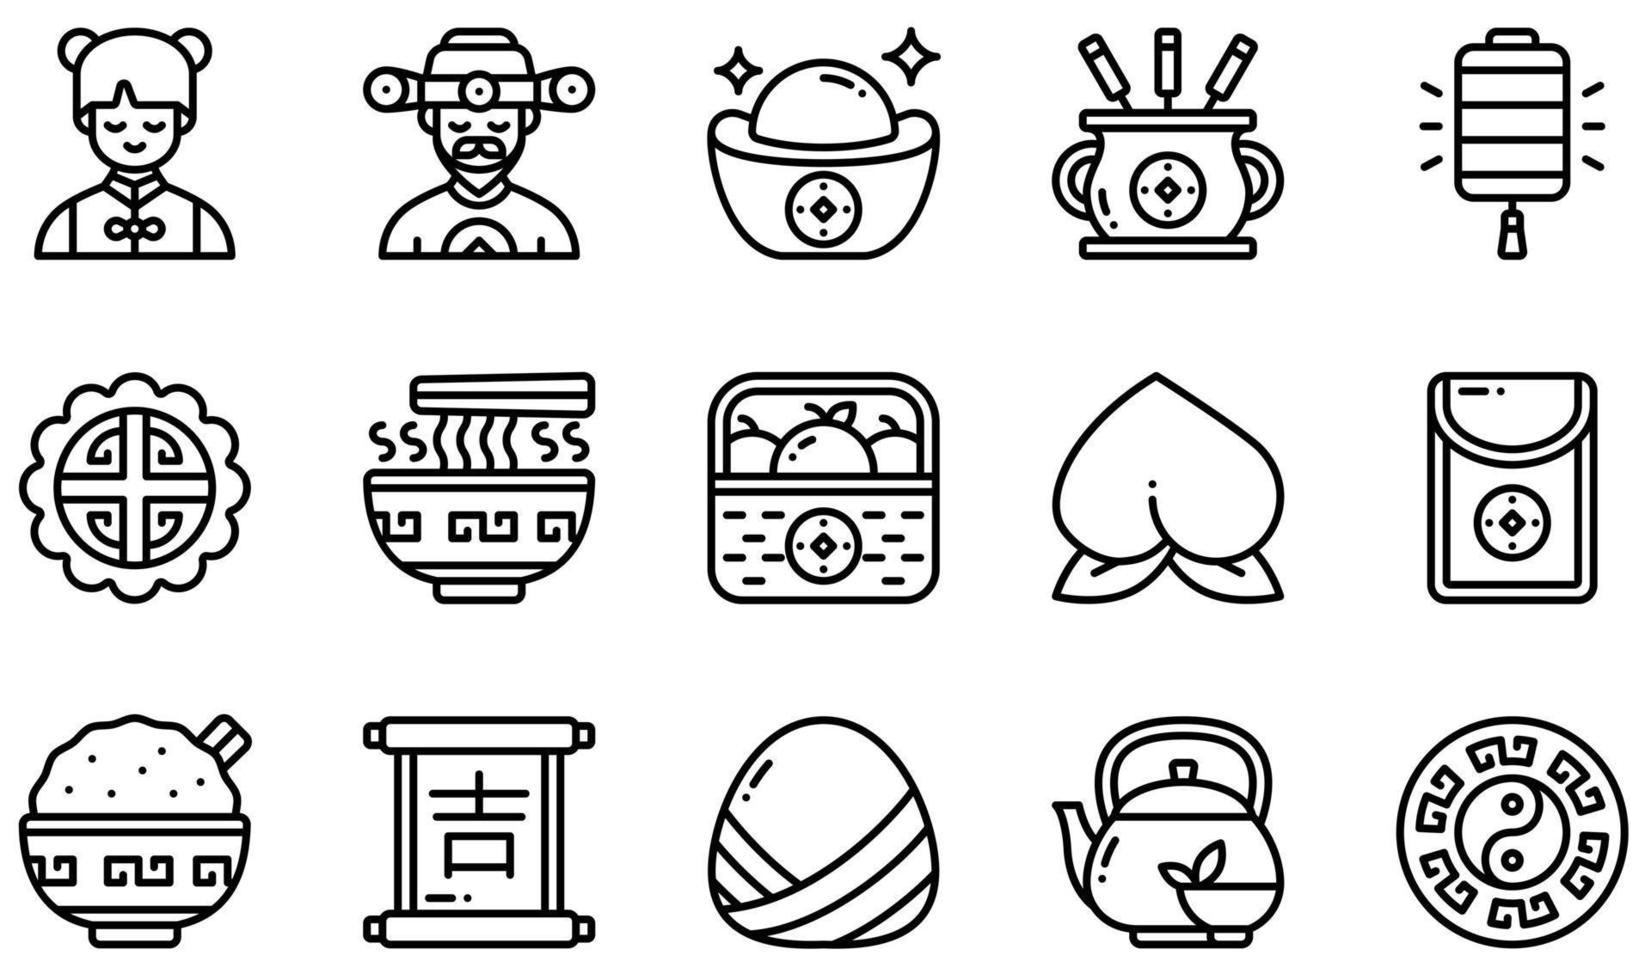 Reihe von Vektorsymbolen im Zusammenhang mit dem chinesischen Neujahr. enthält Ikonen wie den Gott des Reichtums, Gold, Räucherstäbchen, Mondkuchen, Pfirsich, roten Umschlag und mehr. vektor